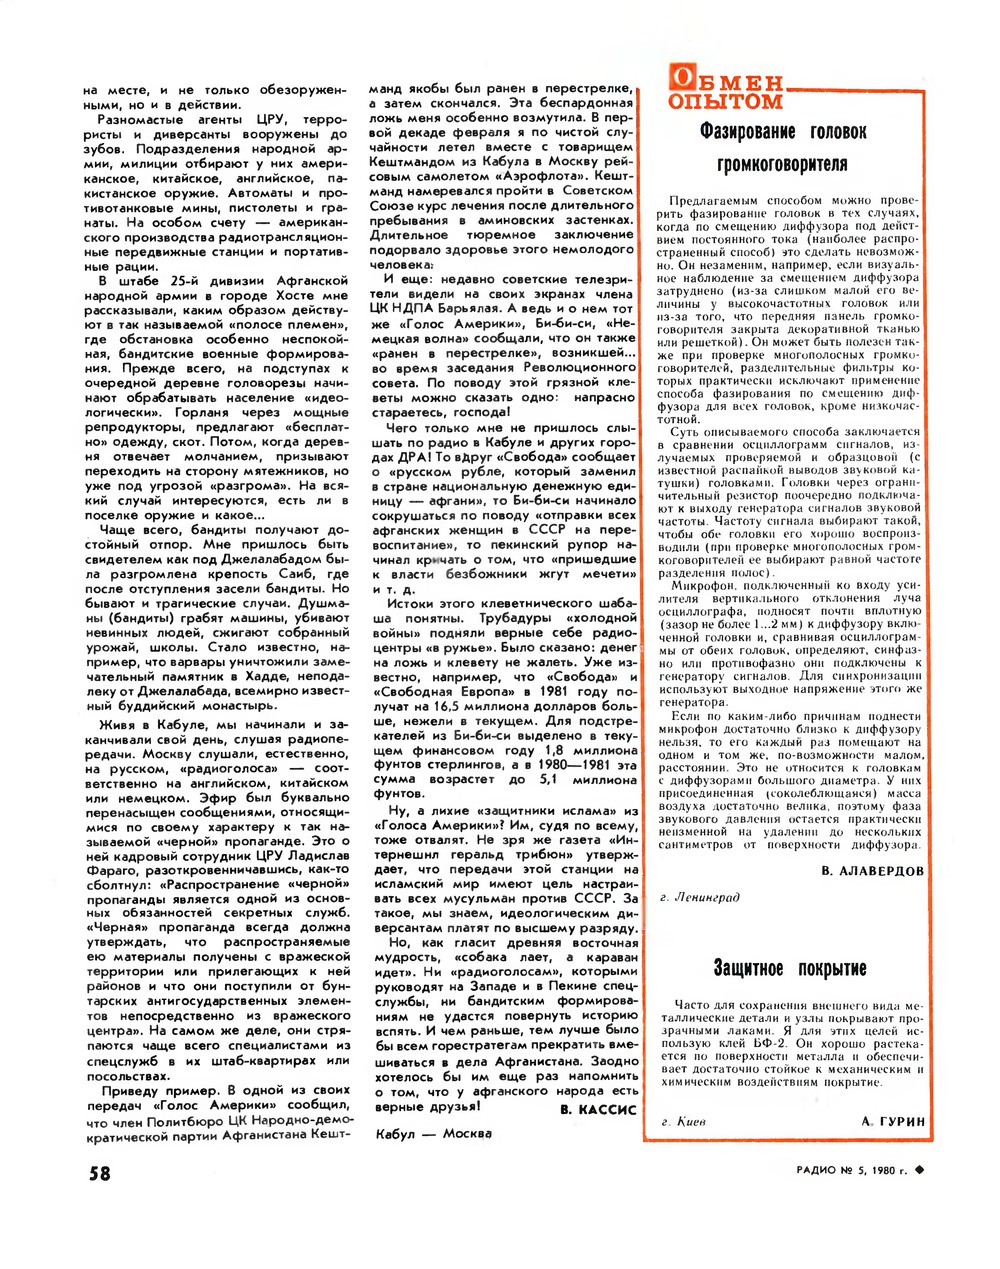 Стр. 58 журнала «Радио» № 5 за 1980 год